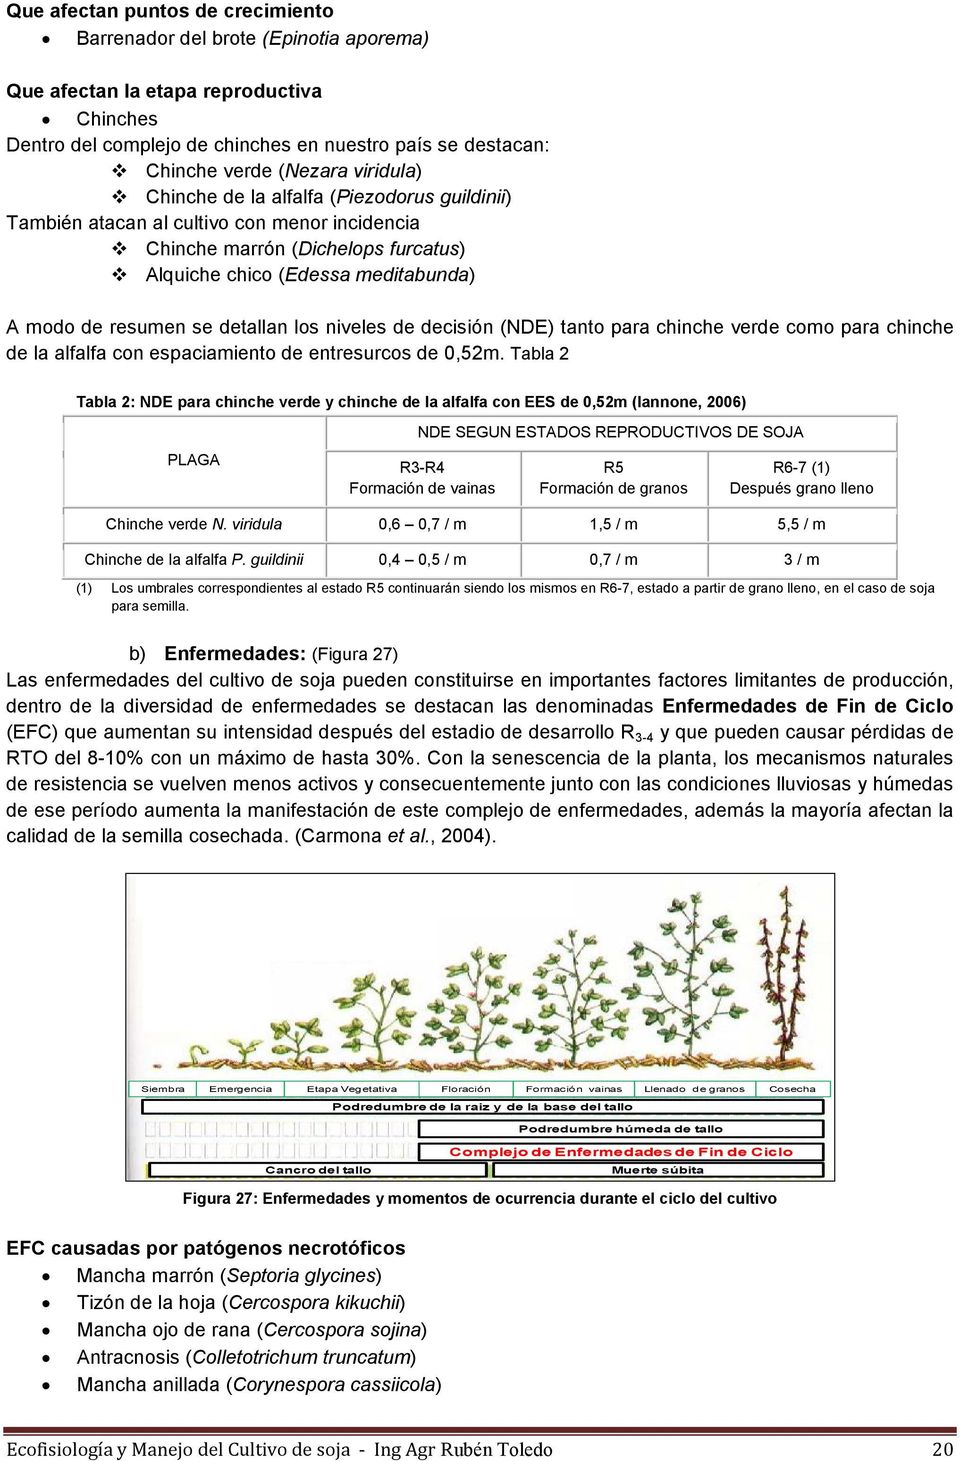 detallan los niveles de decisión (NDE) tanto para chinche verde como para chinche de la alfalfa con espaciamiento de entresurcos de 0,52m.